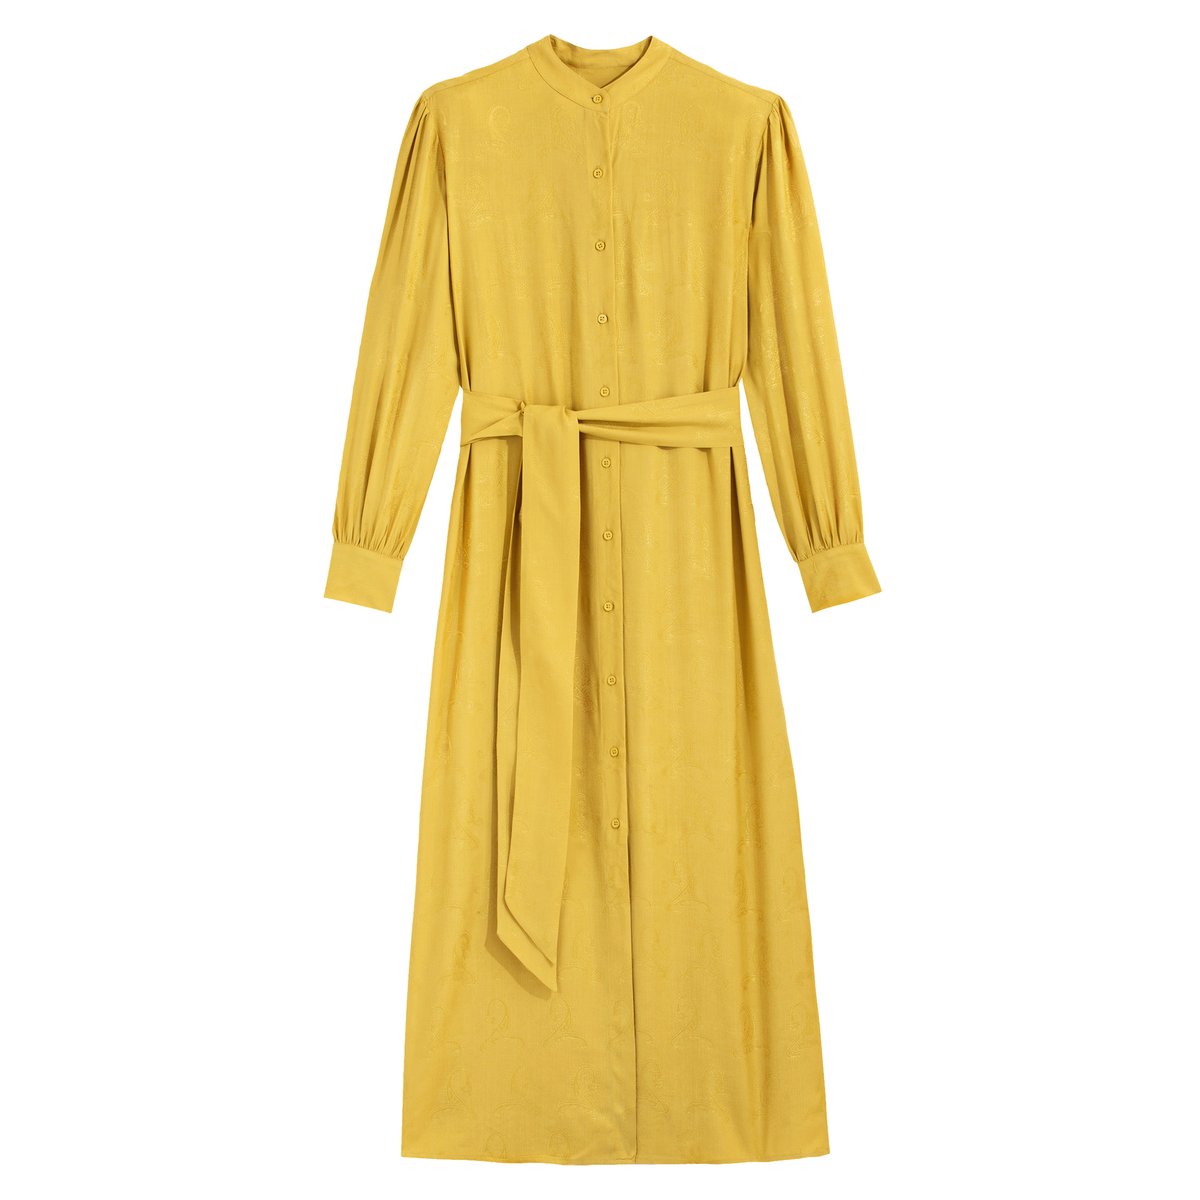 Платье-рубашка La Redoute Длинное с длинными рукавами 42 (FR) - 48 (RUS) желтый, размер 42 (FR) - 48 (RUS) Длинное с длинными рукавами 42 (FR) - 48 (RUS) желтый - фото 5